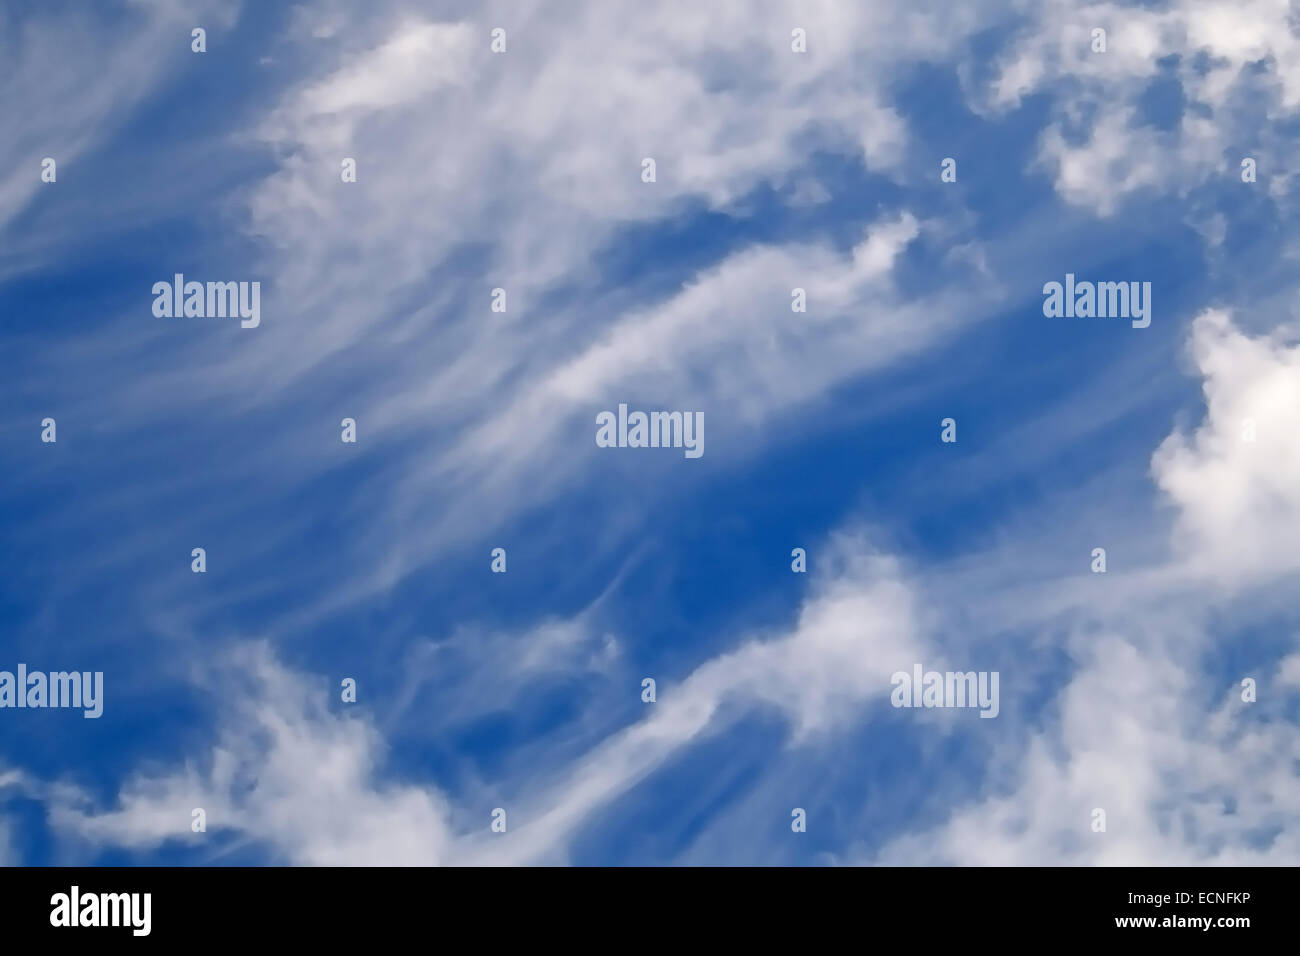 Ciel bleu avec des nuages, cloudscape abstract background Banque D'Images